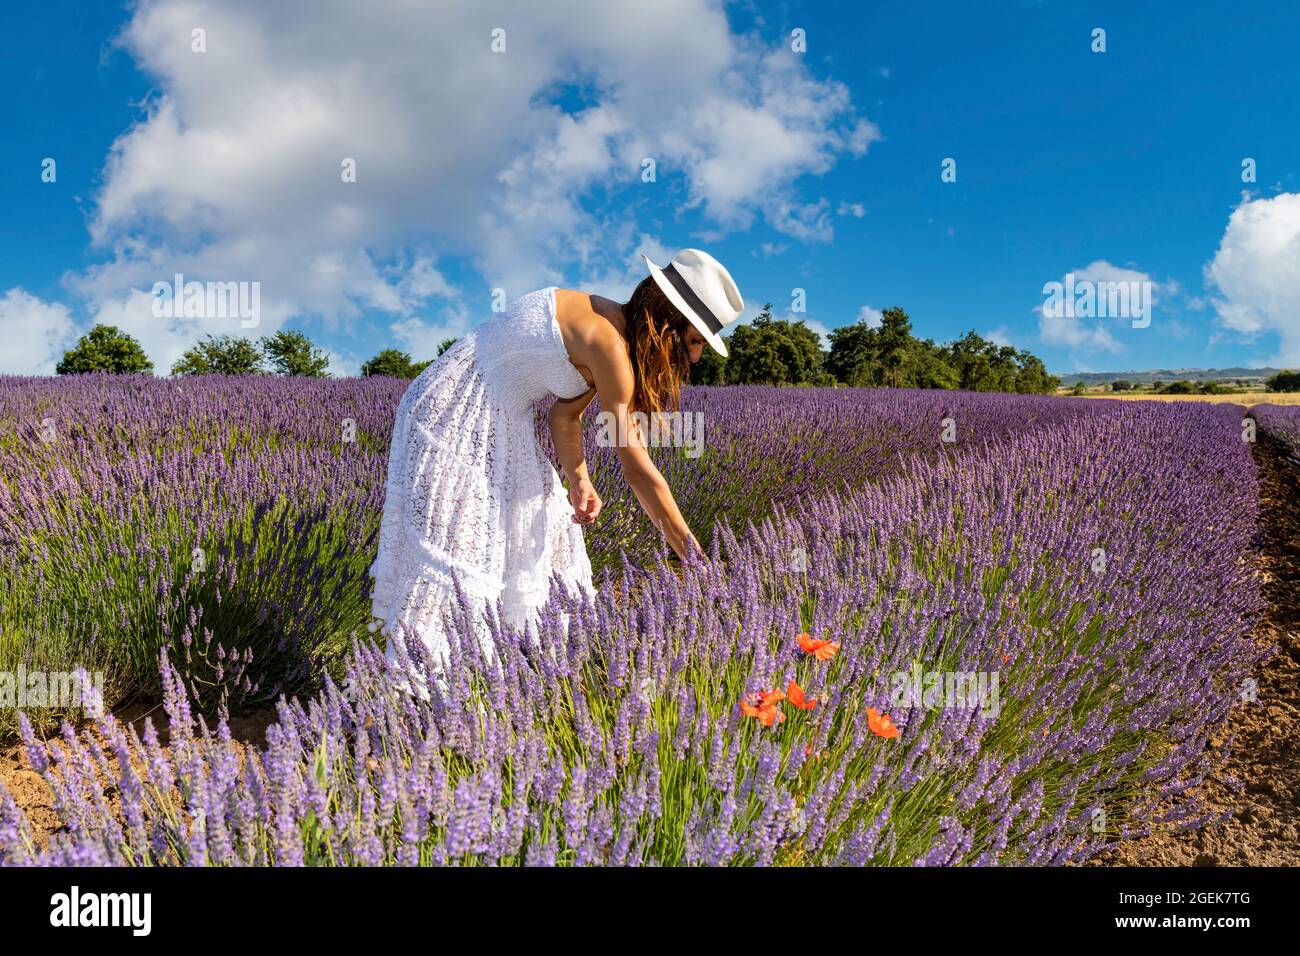 Tourismus in der Natur. Junge Frau in einem langen weißen Kleid und Hut sammelt Lavendelblüten. Konzept von Wohlbefinden und Liebe zur Natur. Stockfoto